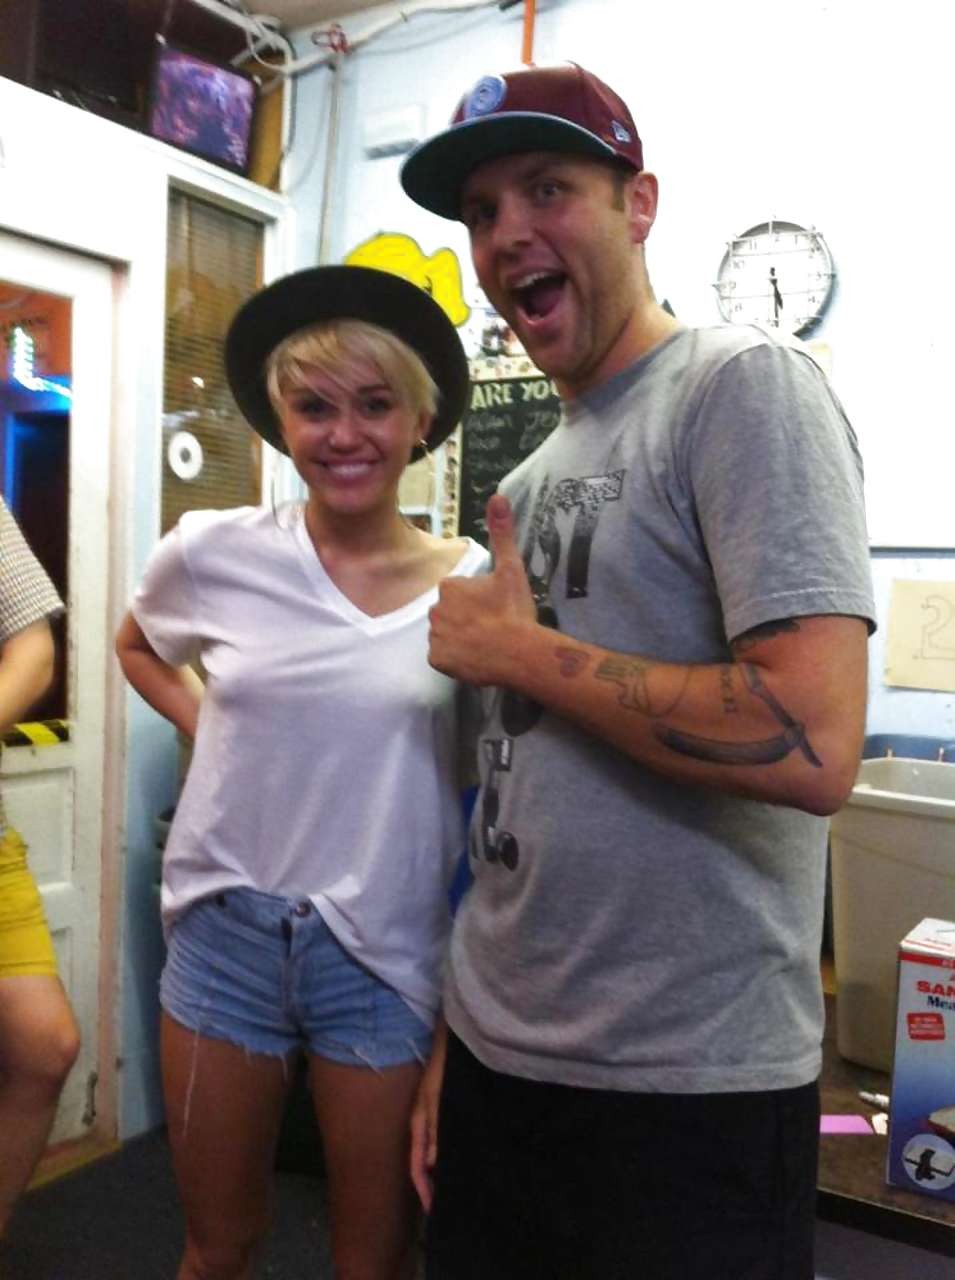 Miley Cyrusが透けて見えるシャツを着て、パンティーを履いてお尻を見せている。
 #75244158